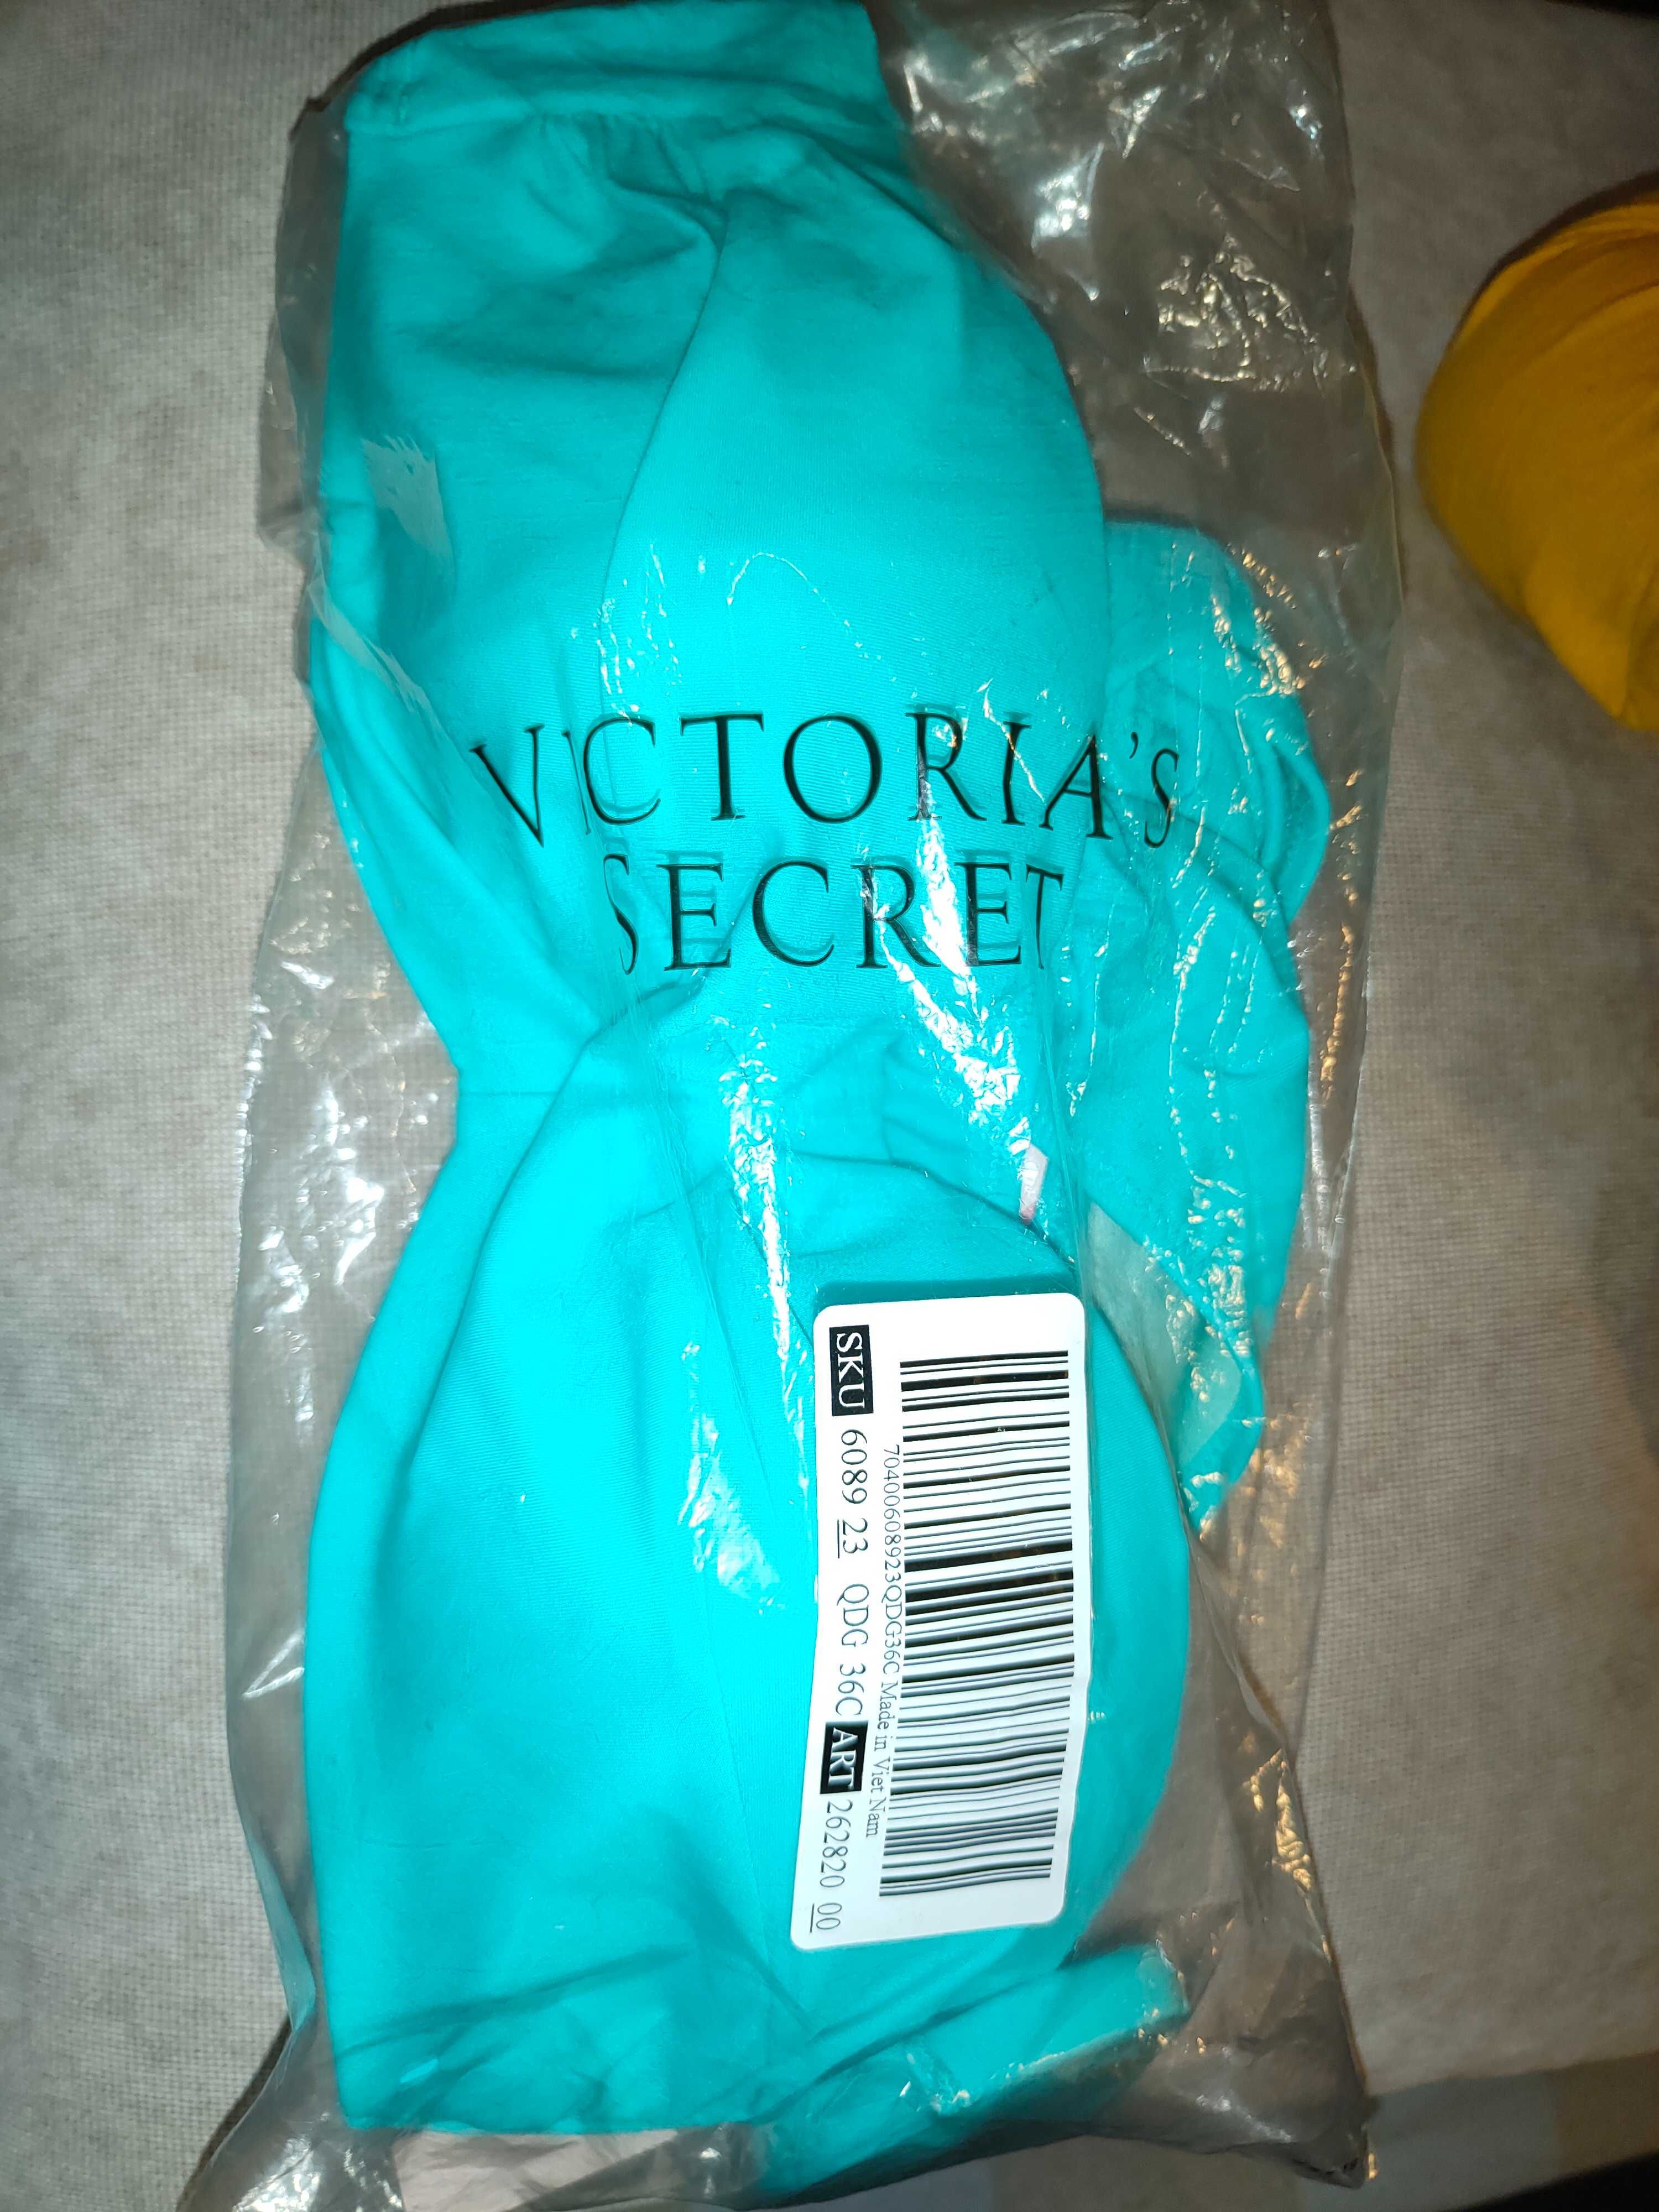 Victoria Secret original 36C топ, М низ. Купальник бирюзового цвета.